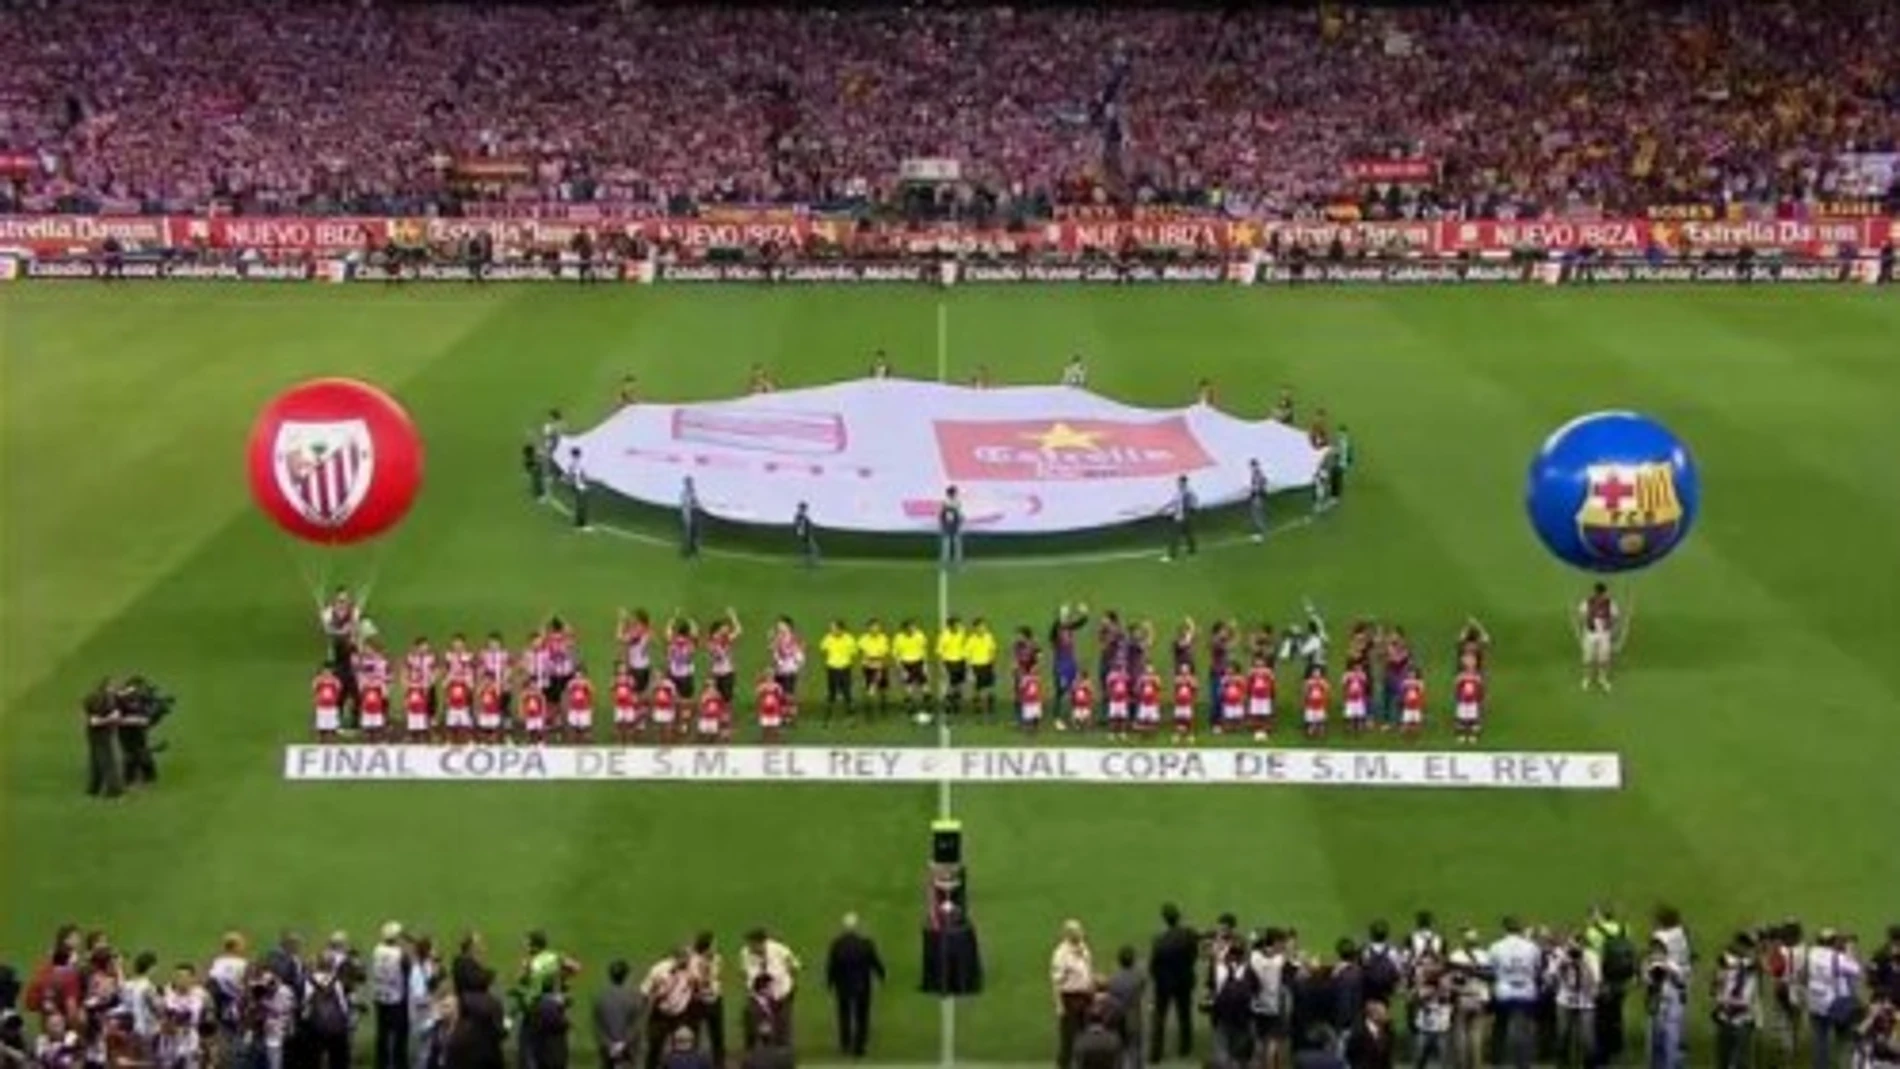 Final de la Copa del Rey entre el Barça y el Athletic Club de Bilbao